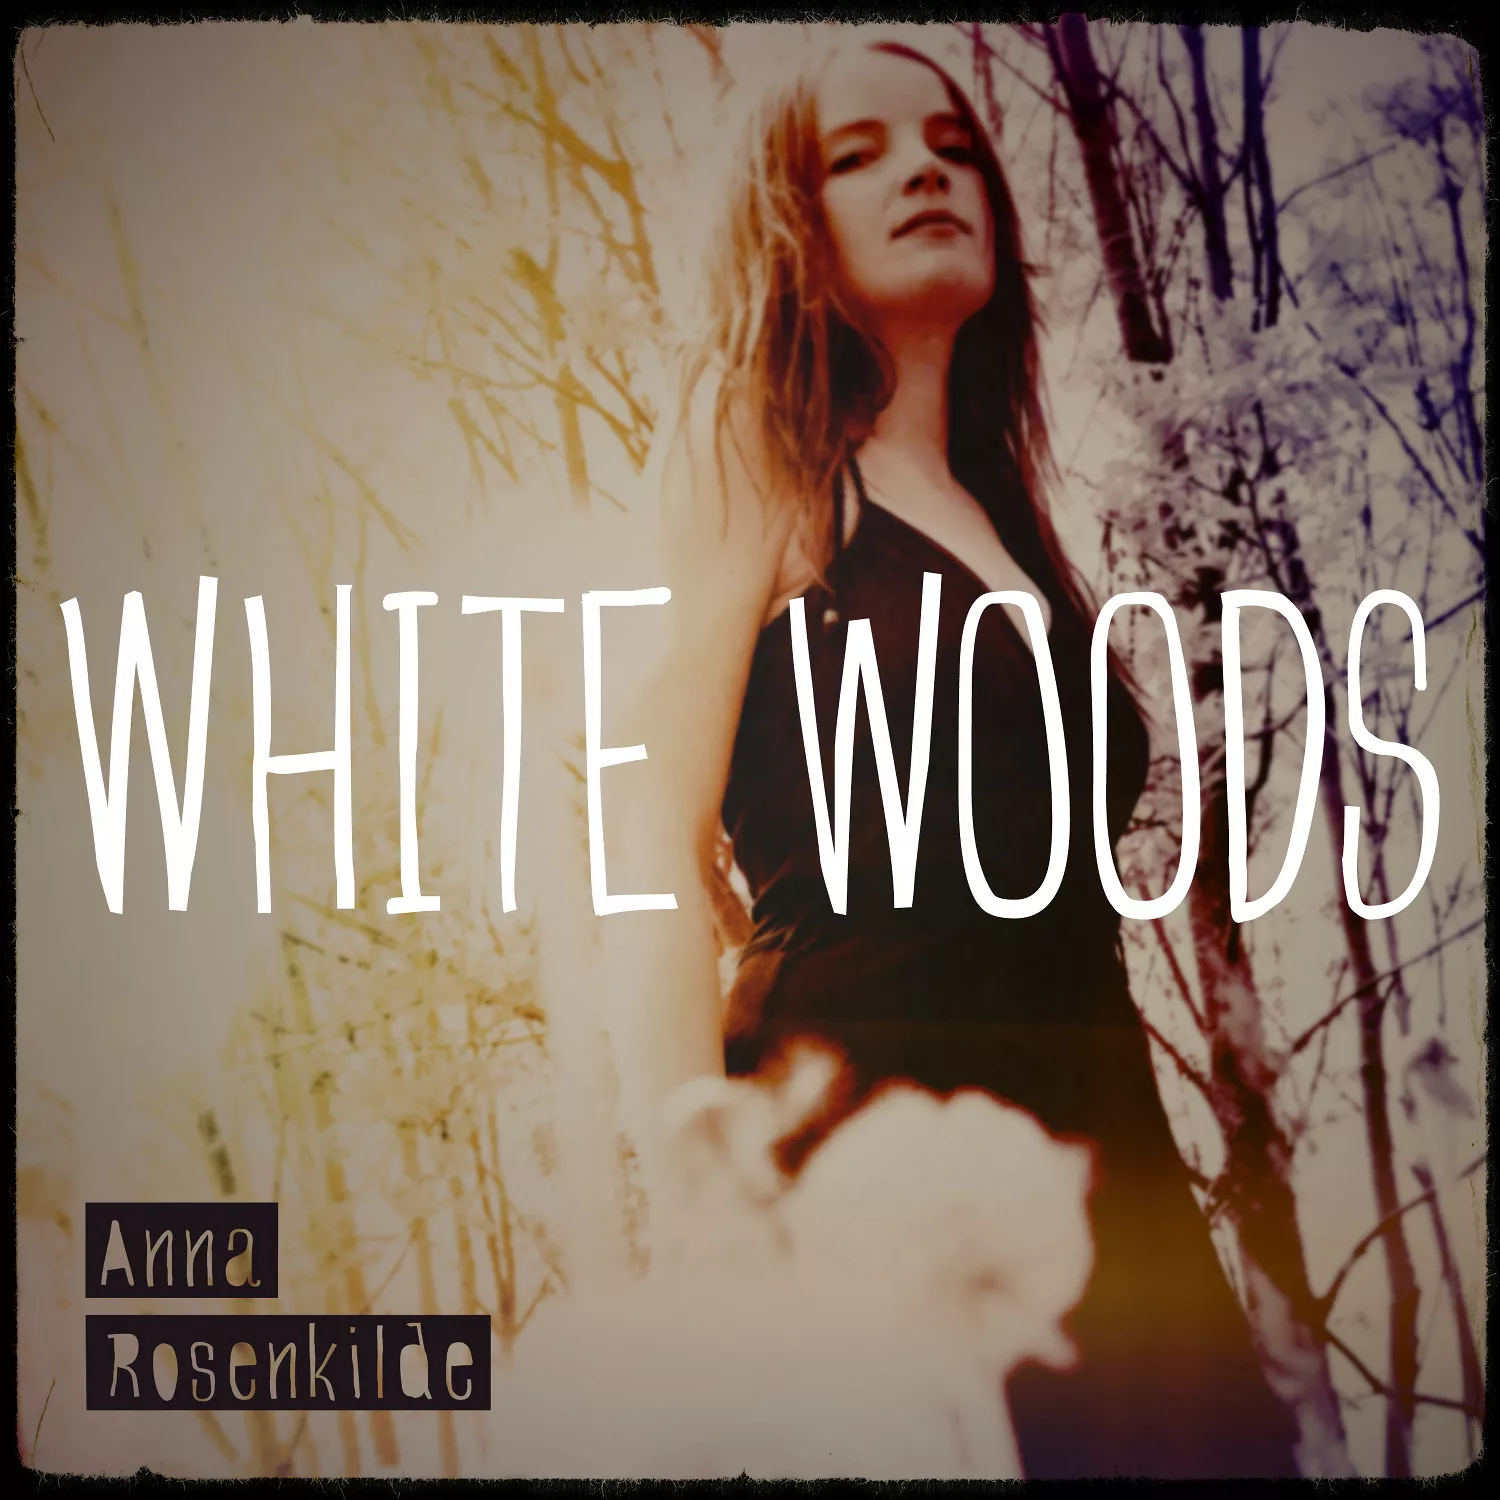 White Woods - Anna Rosenkilde